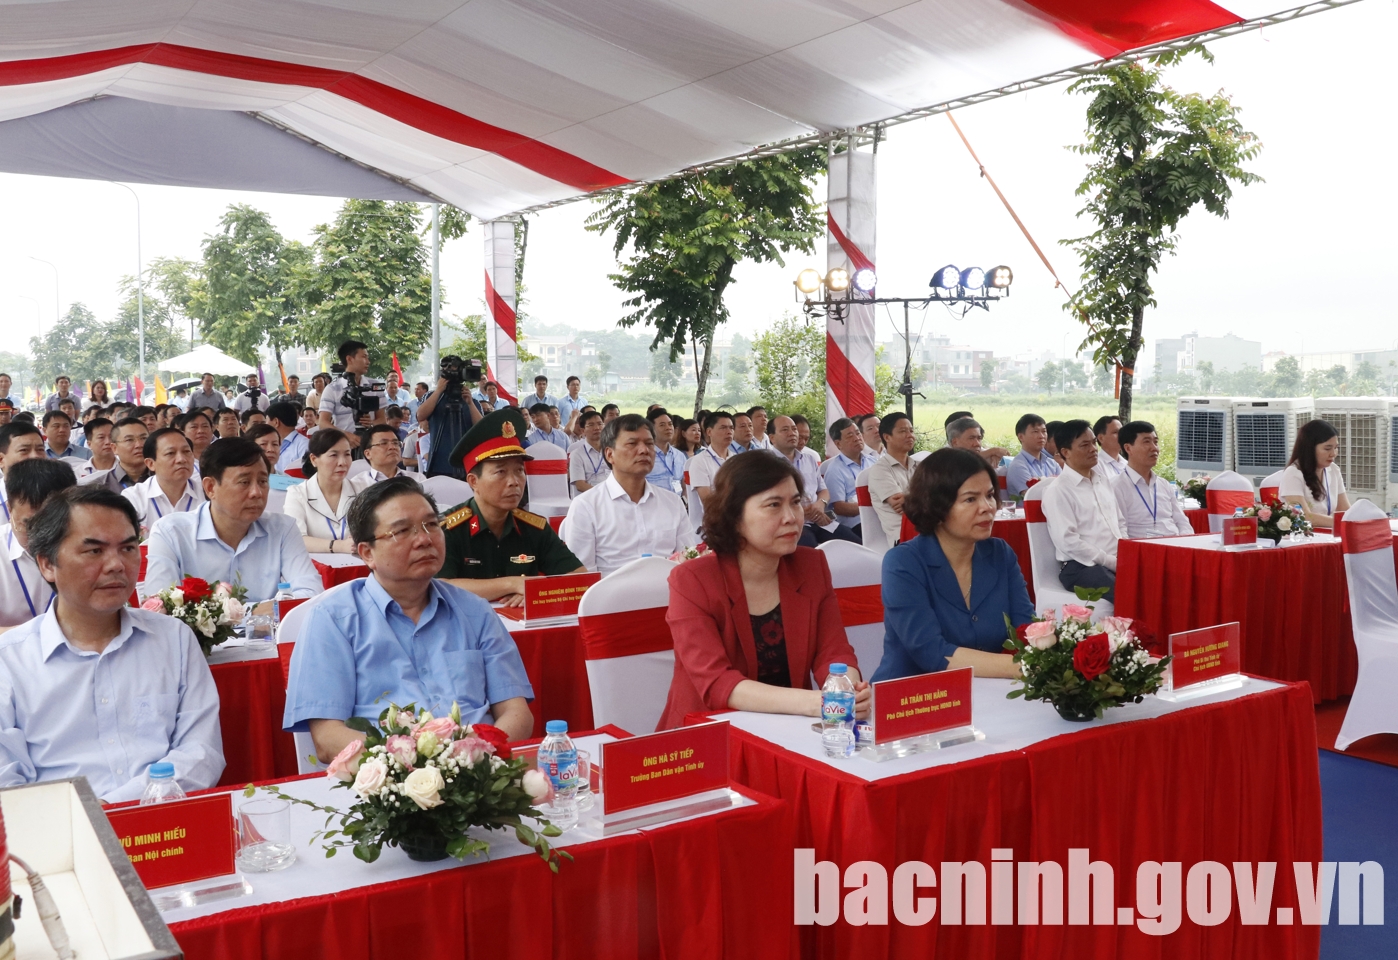 Đồng chí Nguyễn Hương Giang, Phó Bí thư Tỉnh uỷ, Chủ tịch UBND tỉnh (đầu tiên từ phải qua) cùng các đại biểu dự Lễ Khởi công tại điểm cầu tỉnh Bắc Ninh.